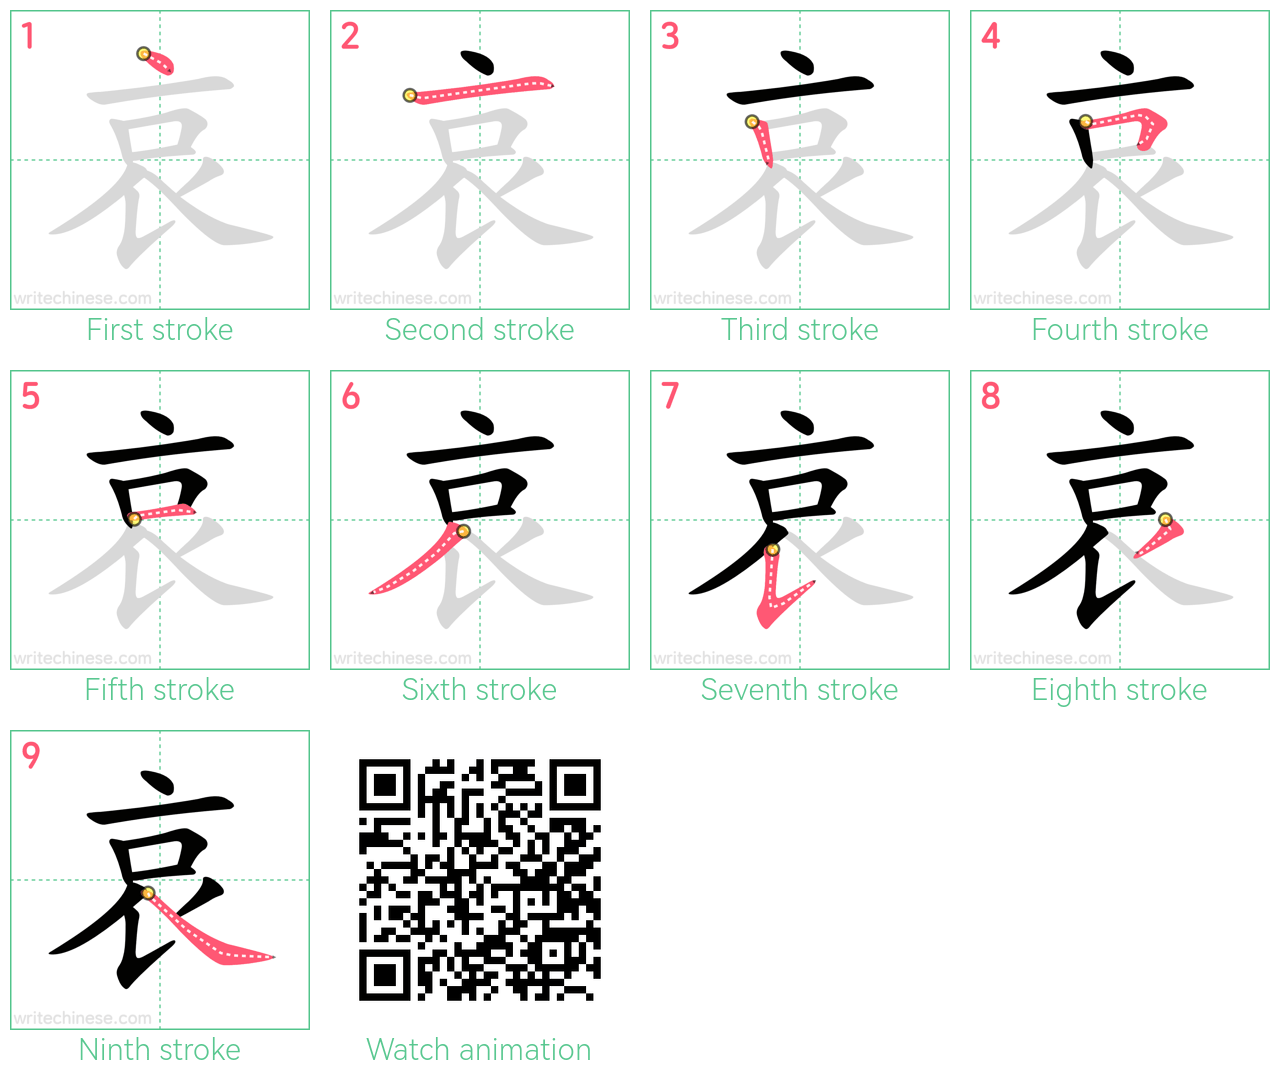 哀 step-by-step stroke order diagrams